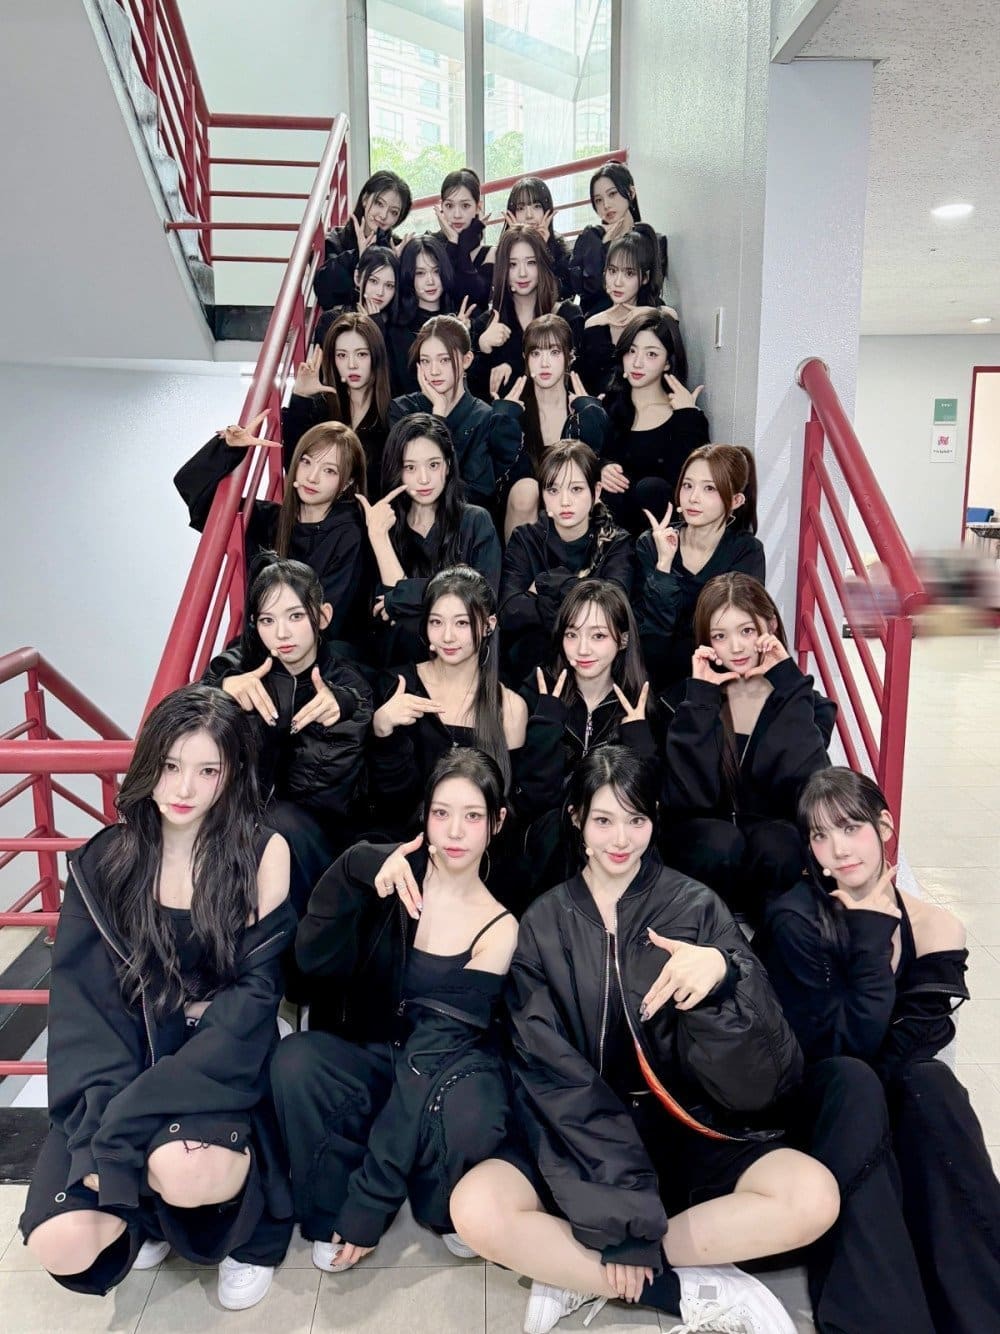 [theqoo] «Они что, на автобусе ездят на музыкальные программы?» 24 участницы гёрл-группы tripleS сделали фото на знаменитой лестнице Inkigayo